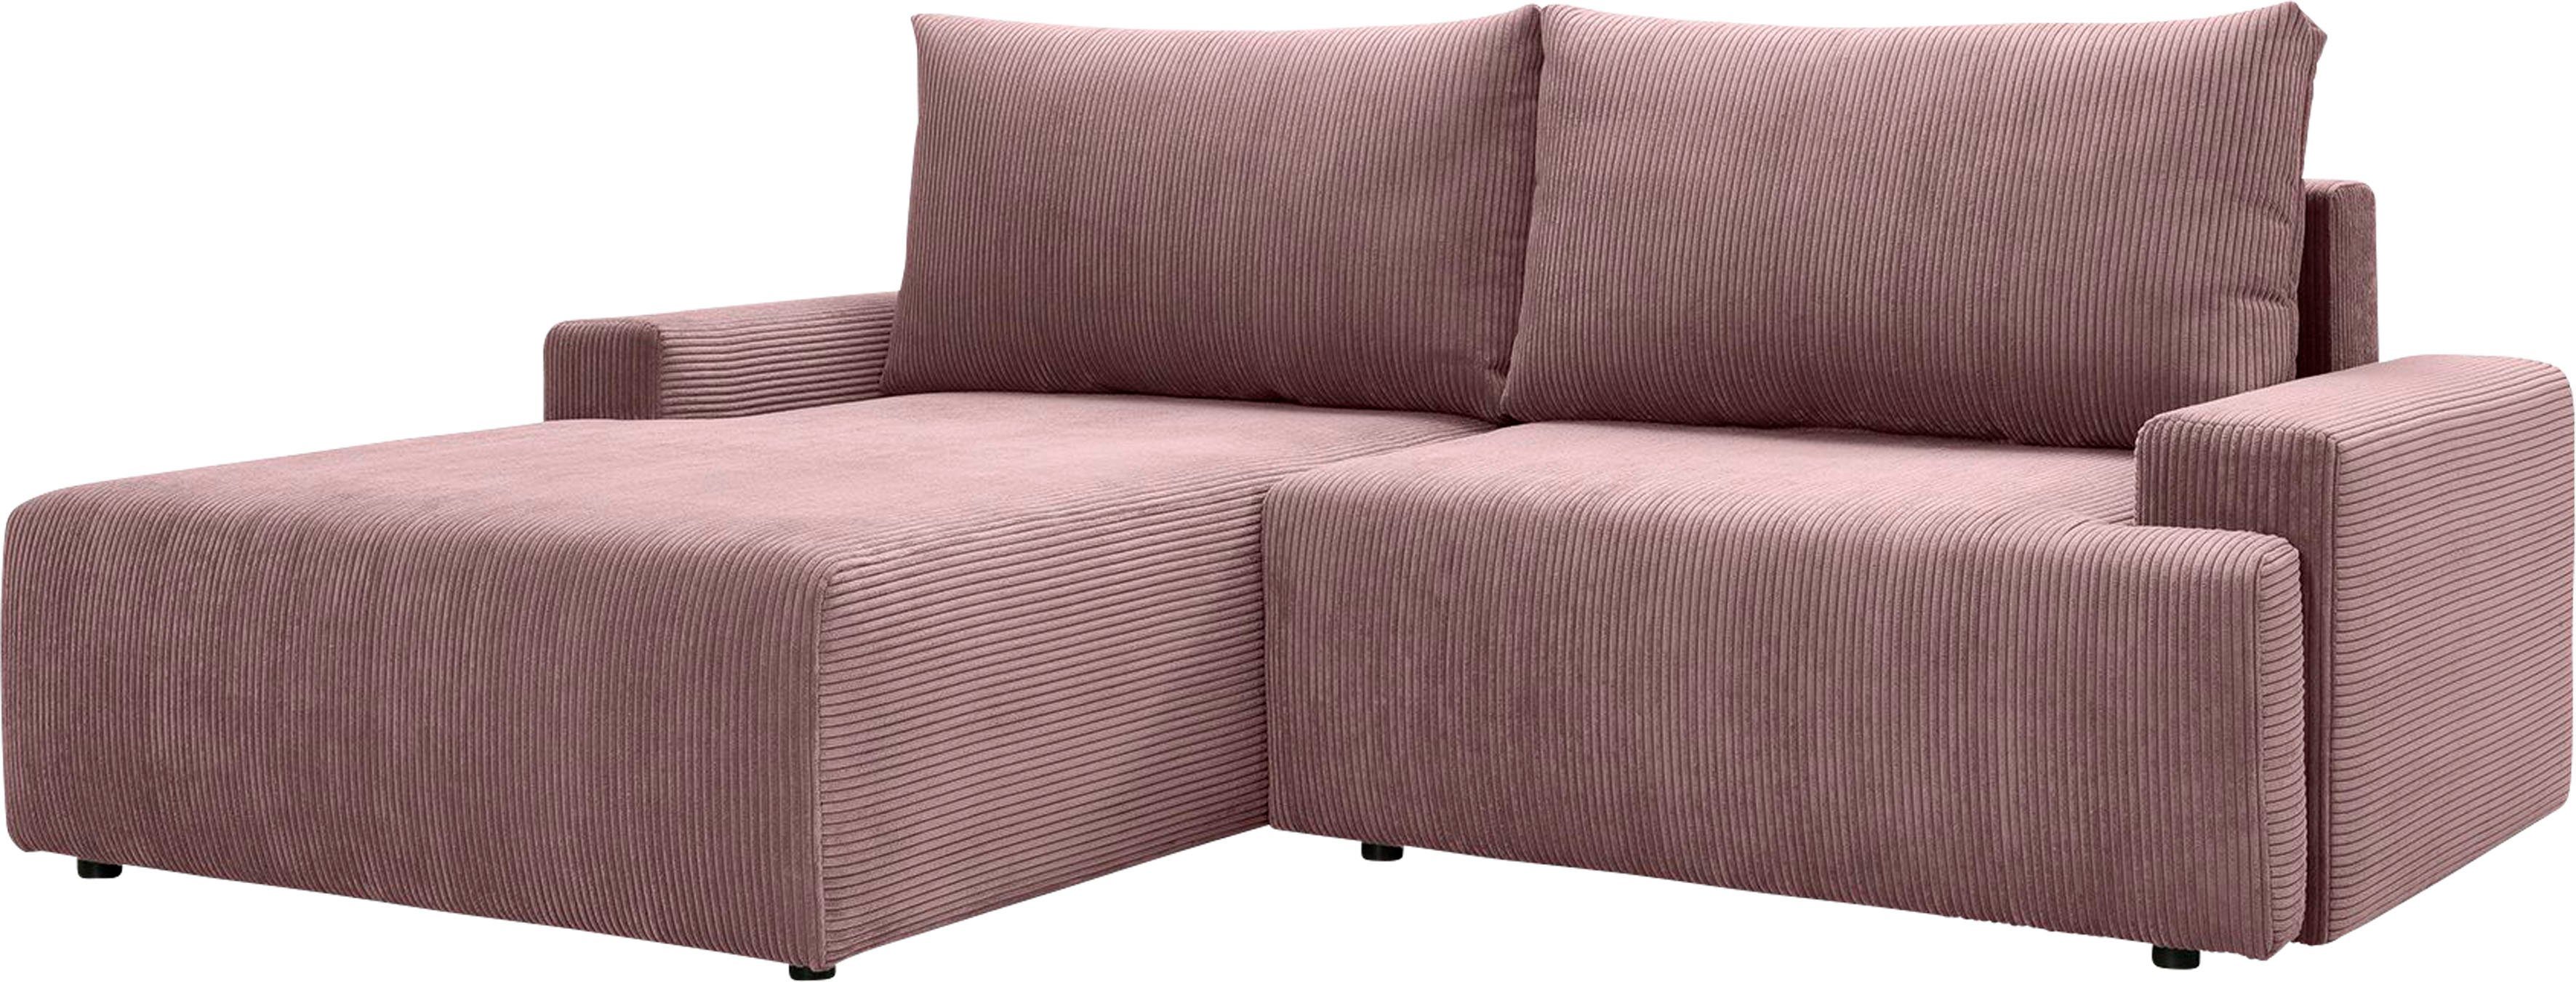 Cord-Farben Ecksofa und Bettkasten - fashion in inklusive exxpo verschiedenen Bettfunktion Orinoko, rose sofa